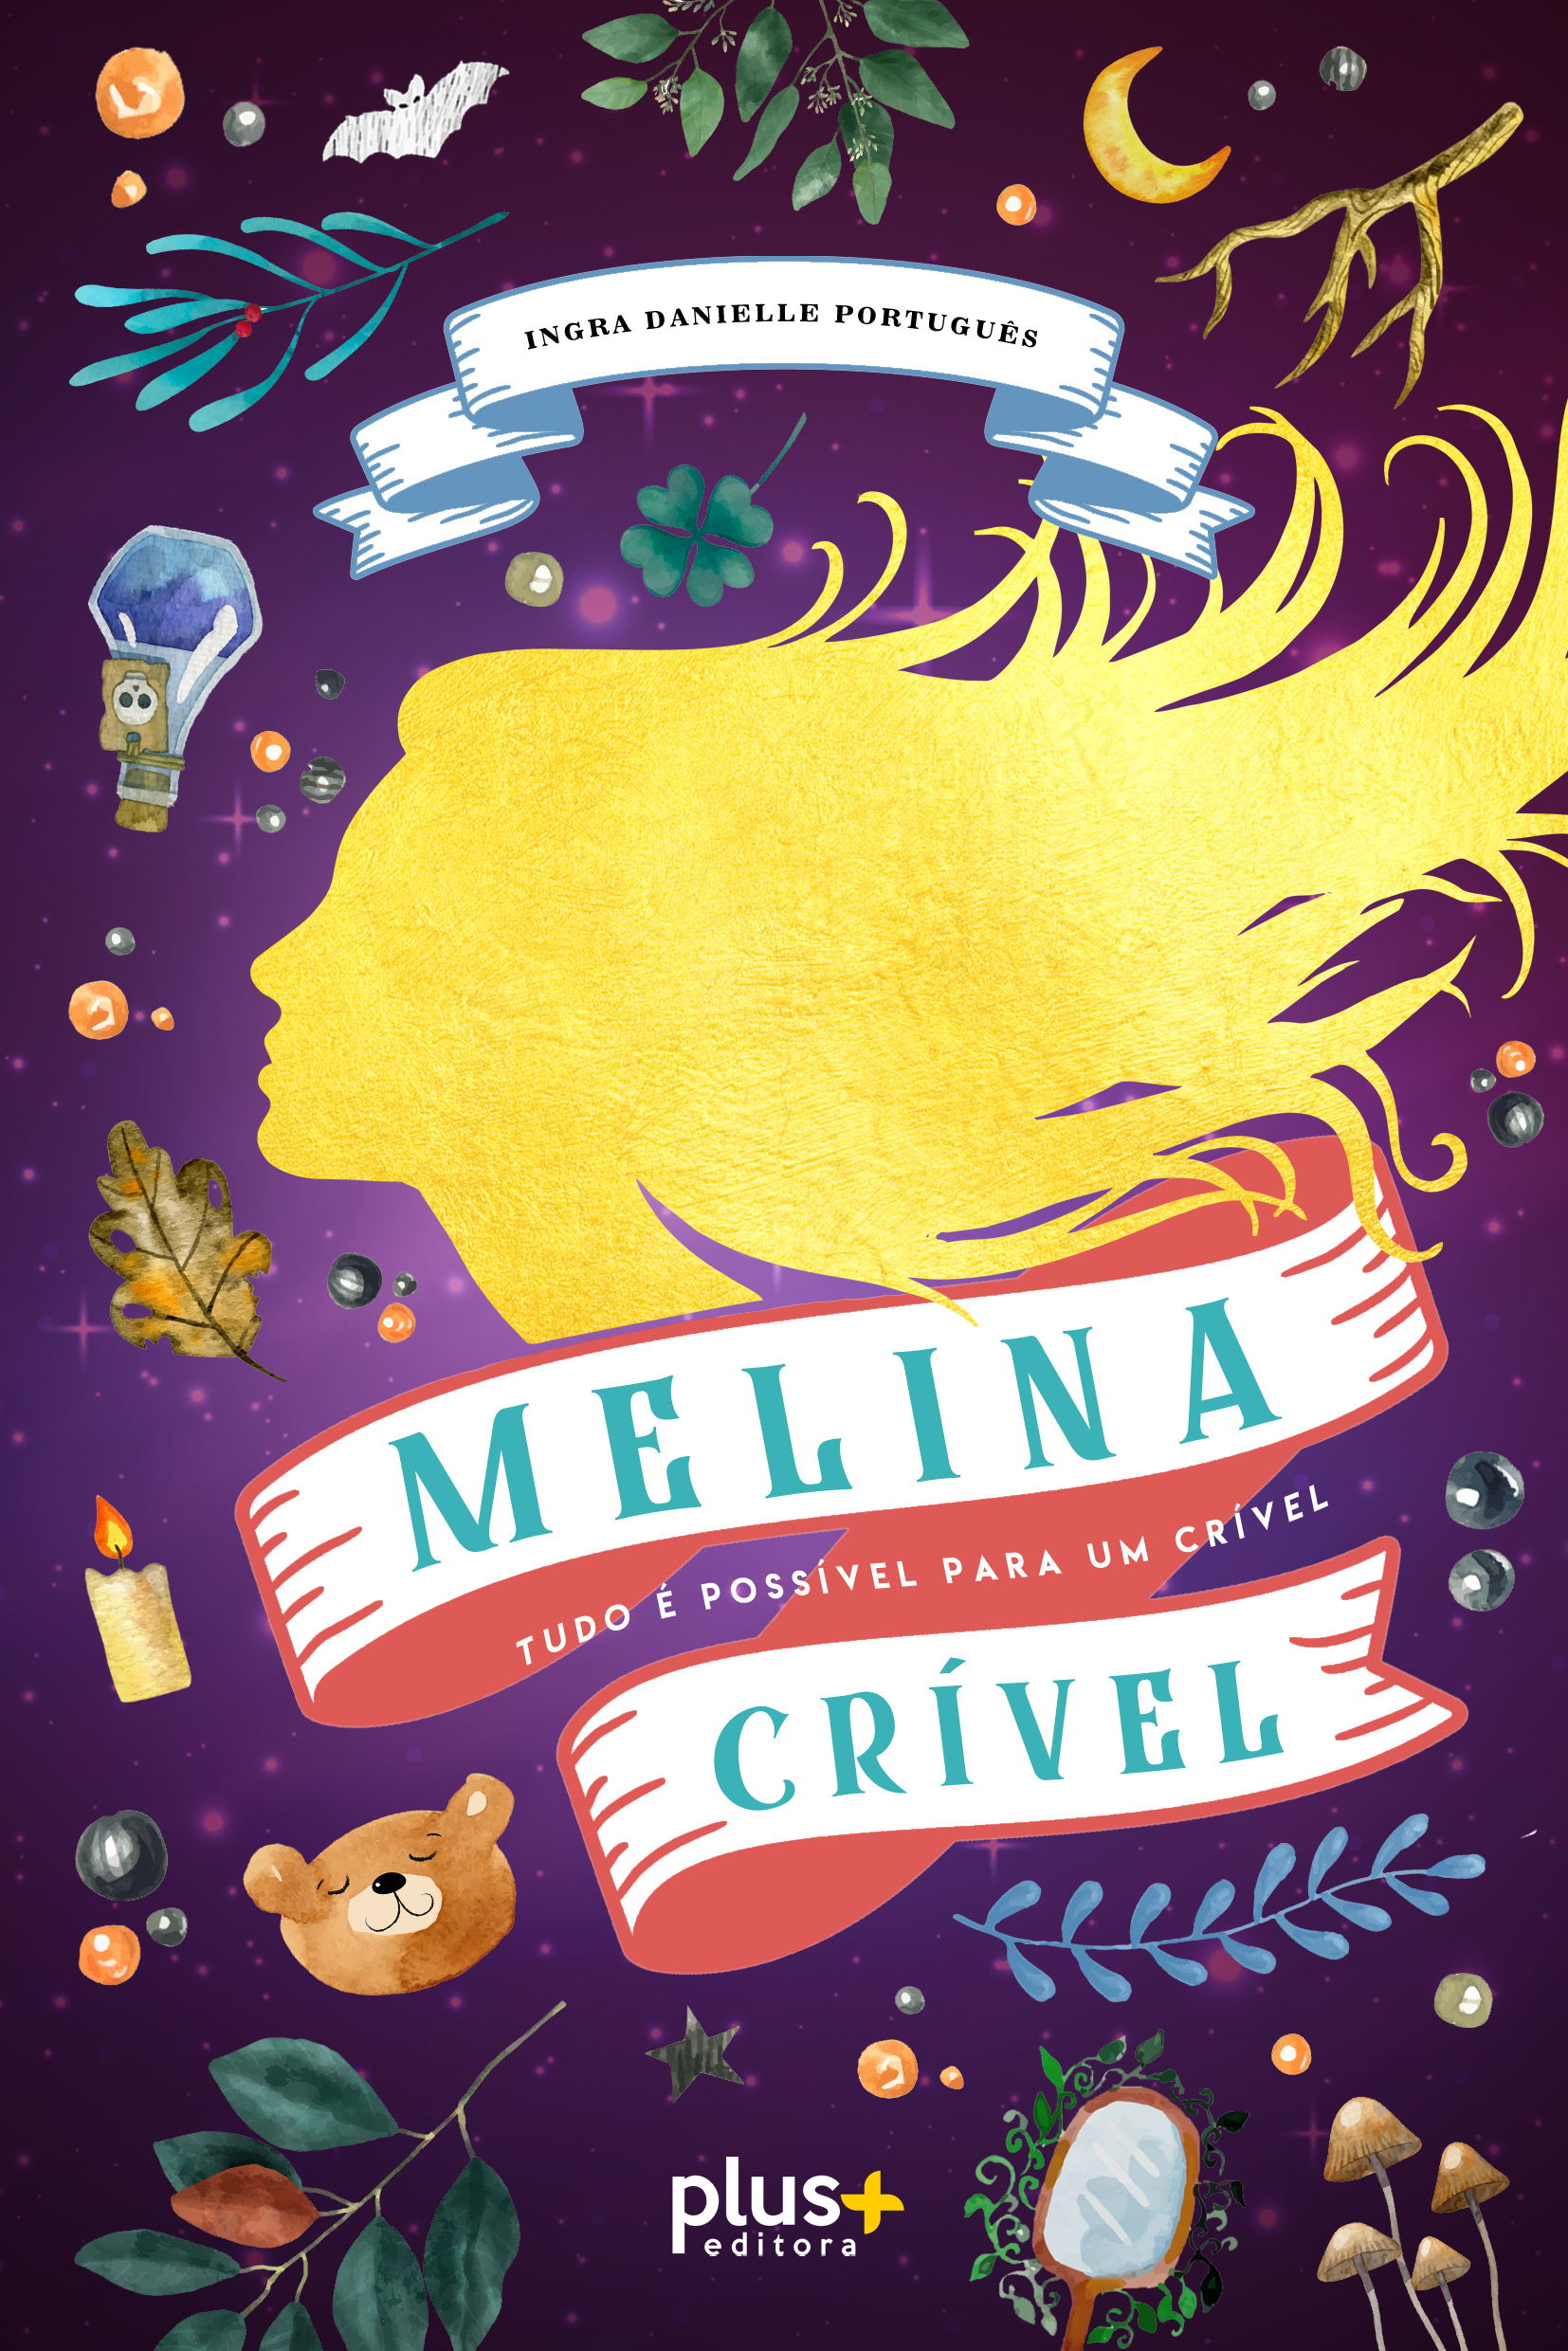 Melina Crivel - Tudo é Possivel para um Crível